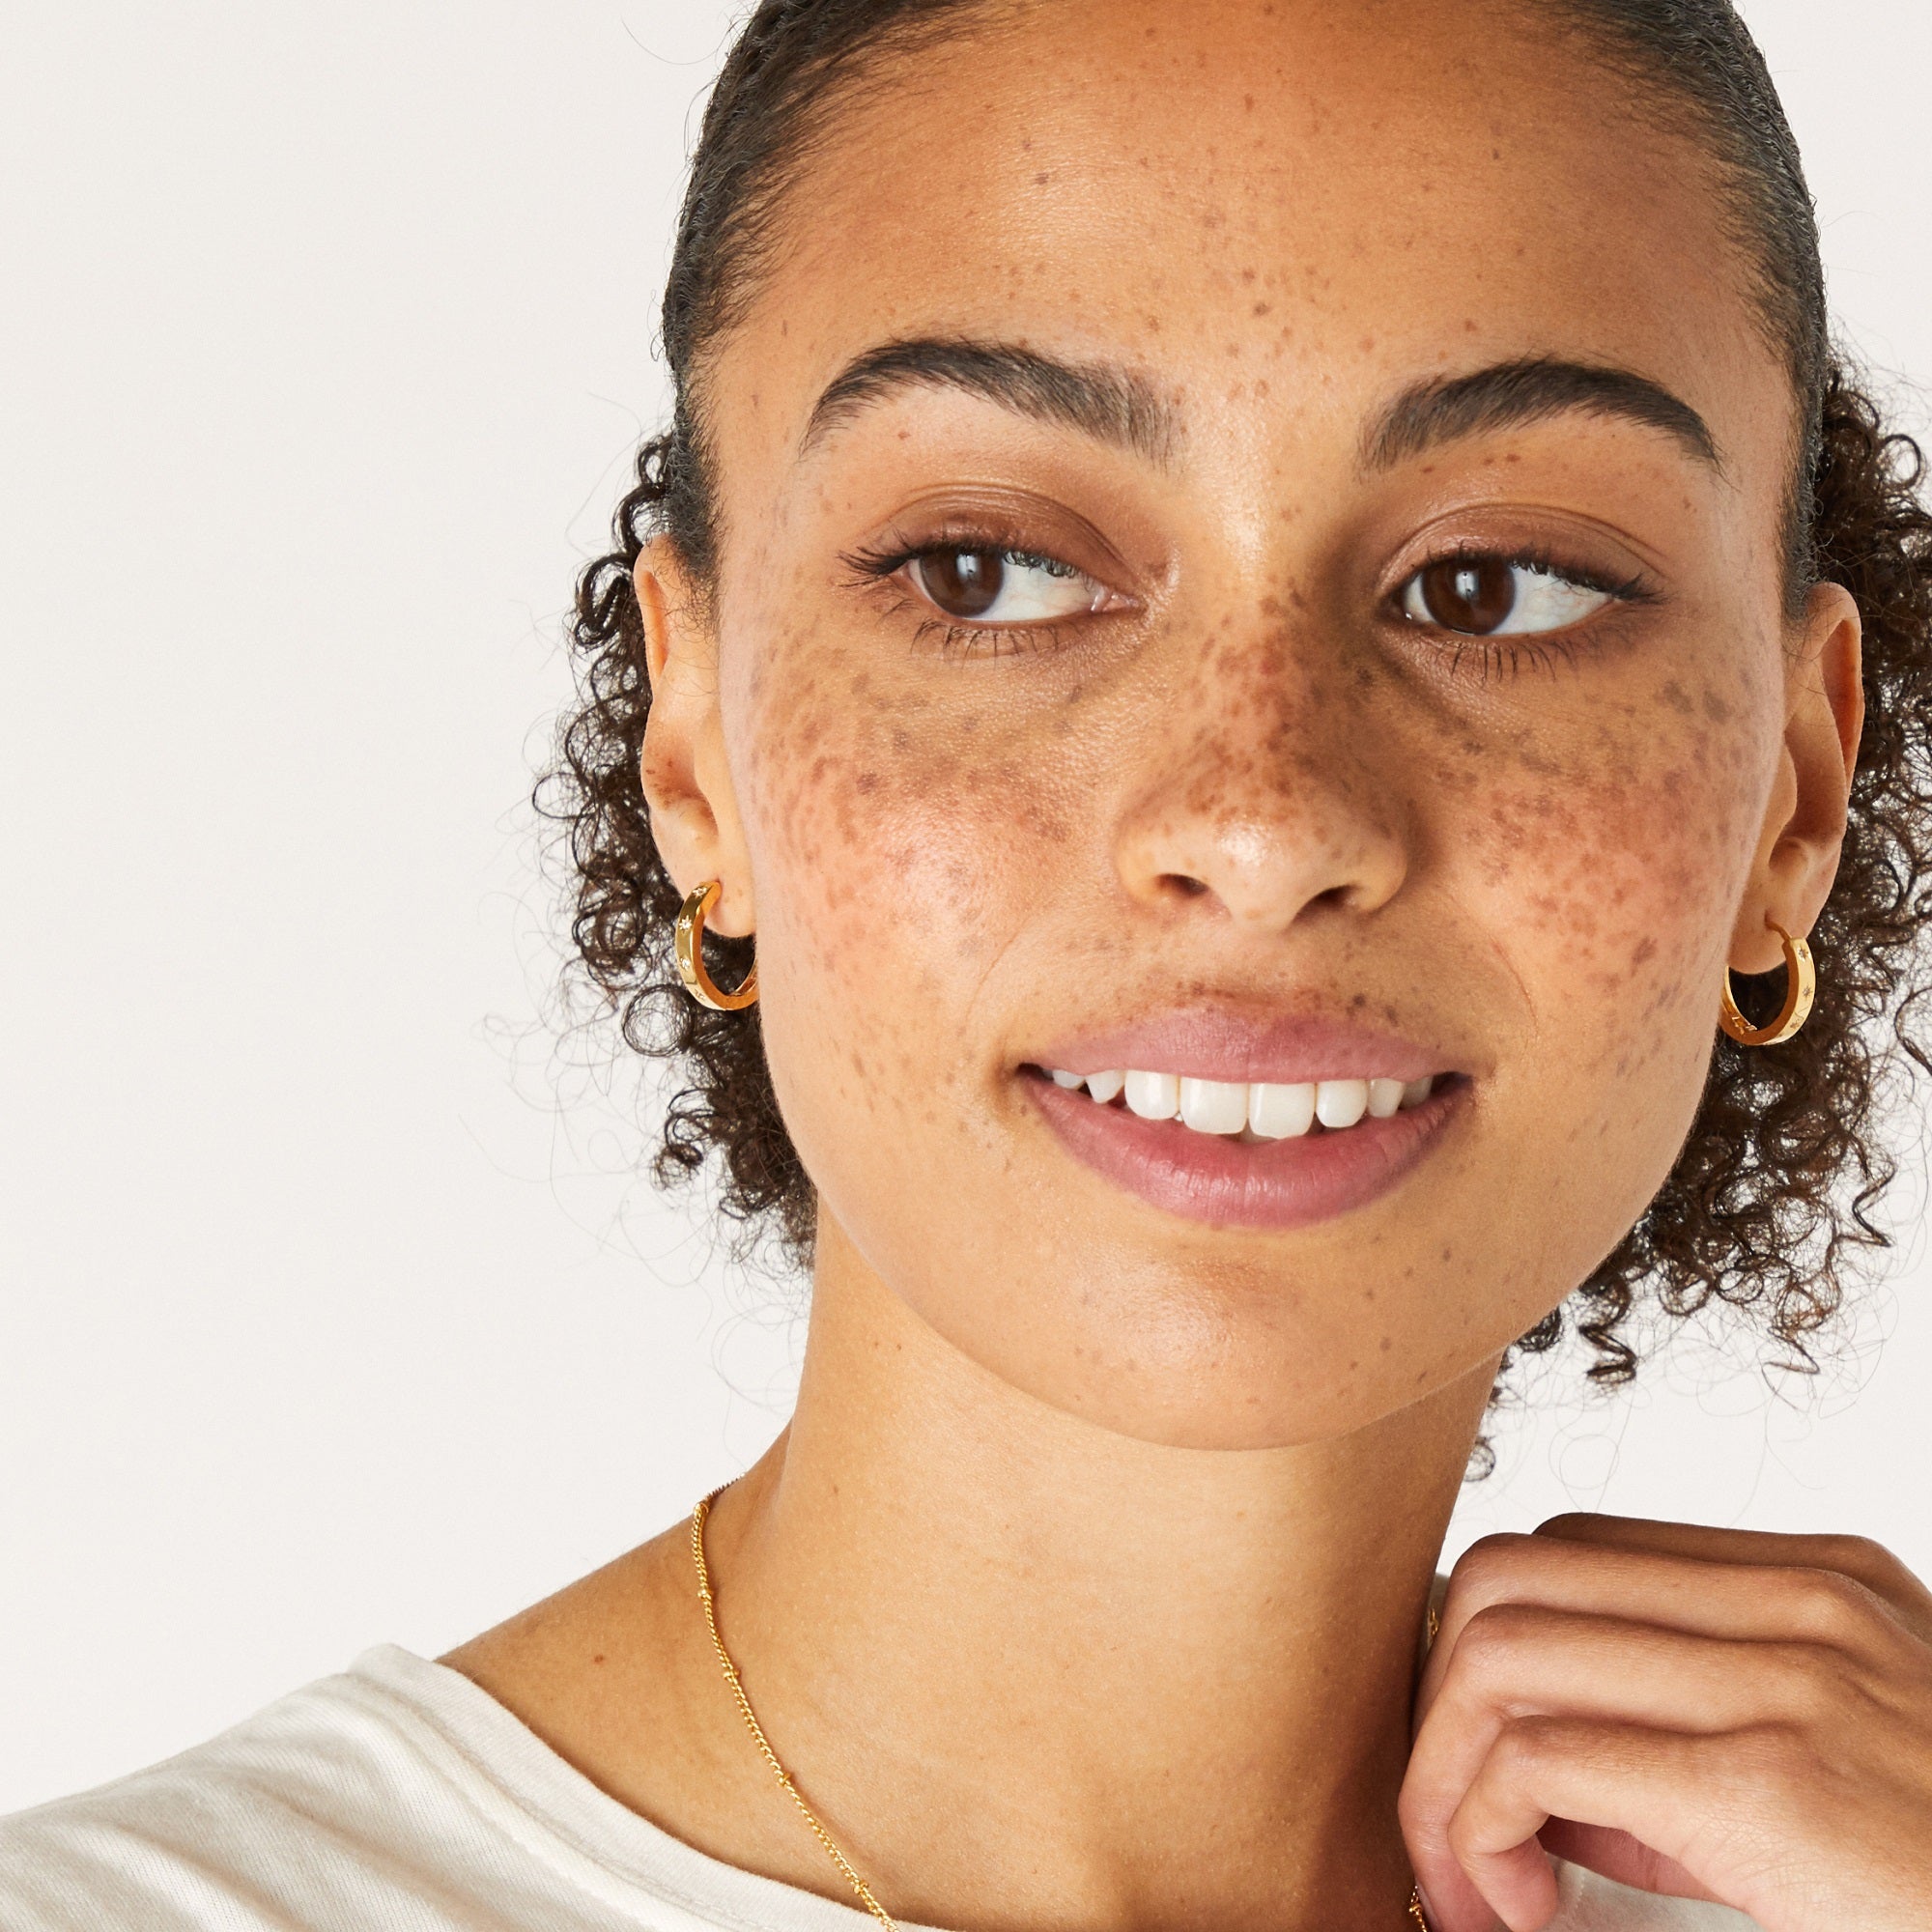 Accessorize London Women's Z Gold Sparkle Star Chunky Hoop Earrings